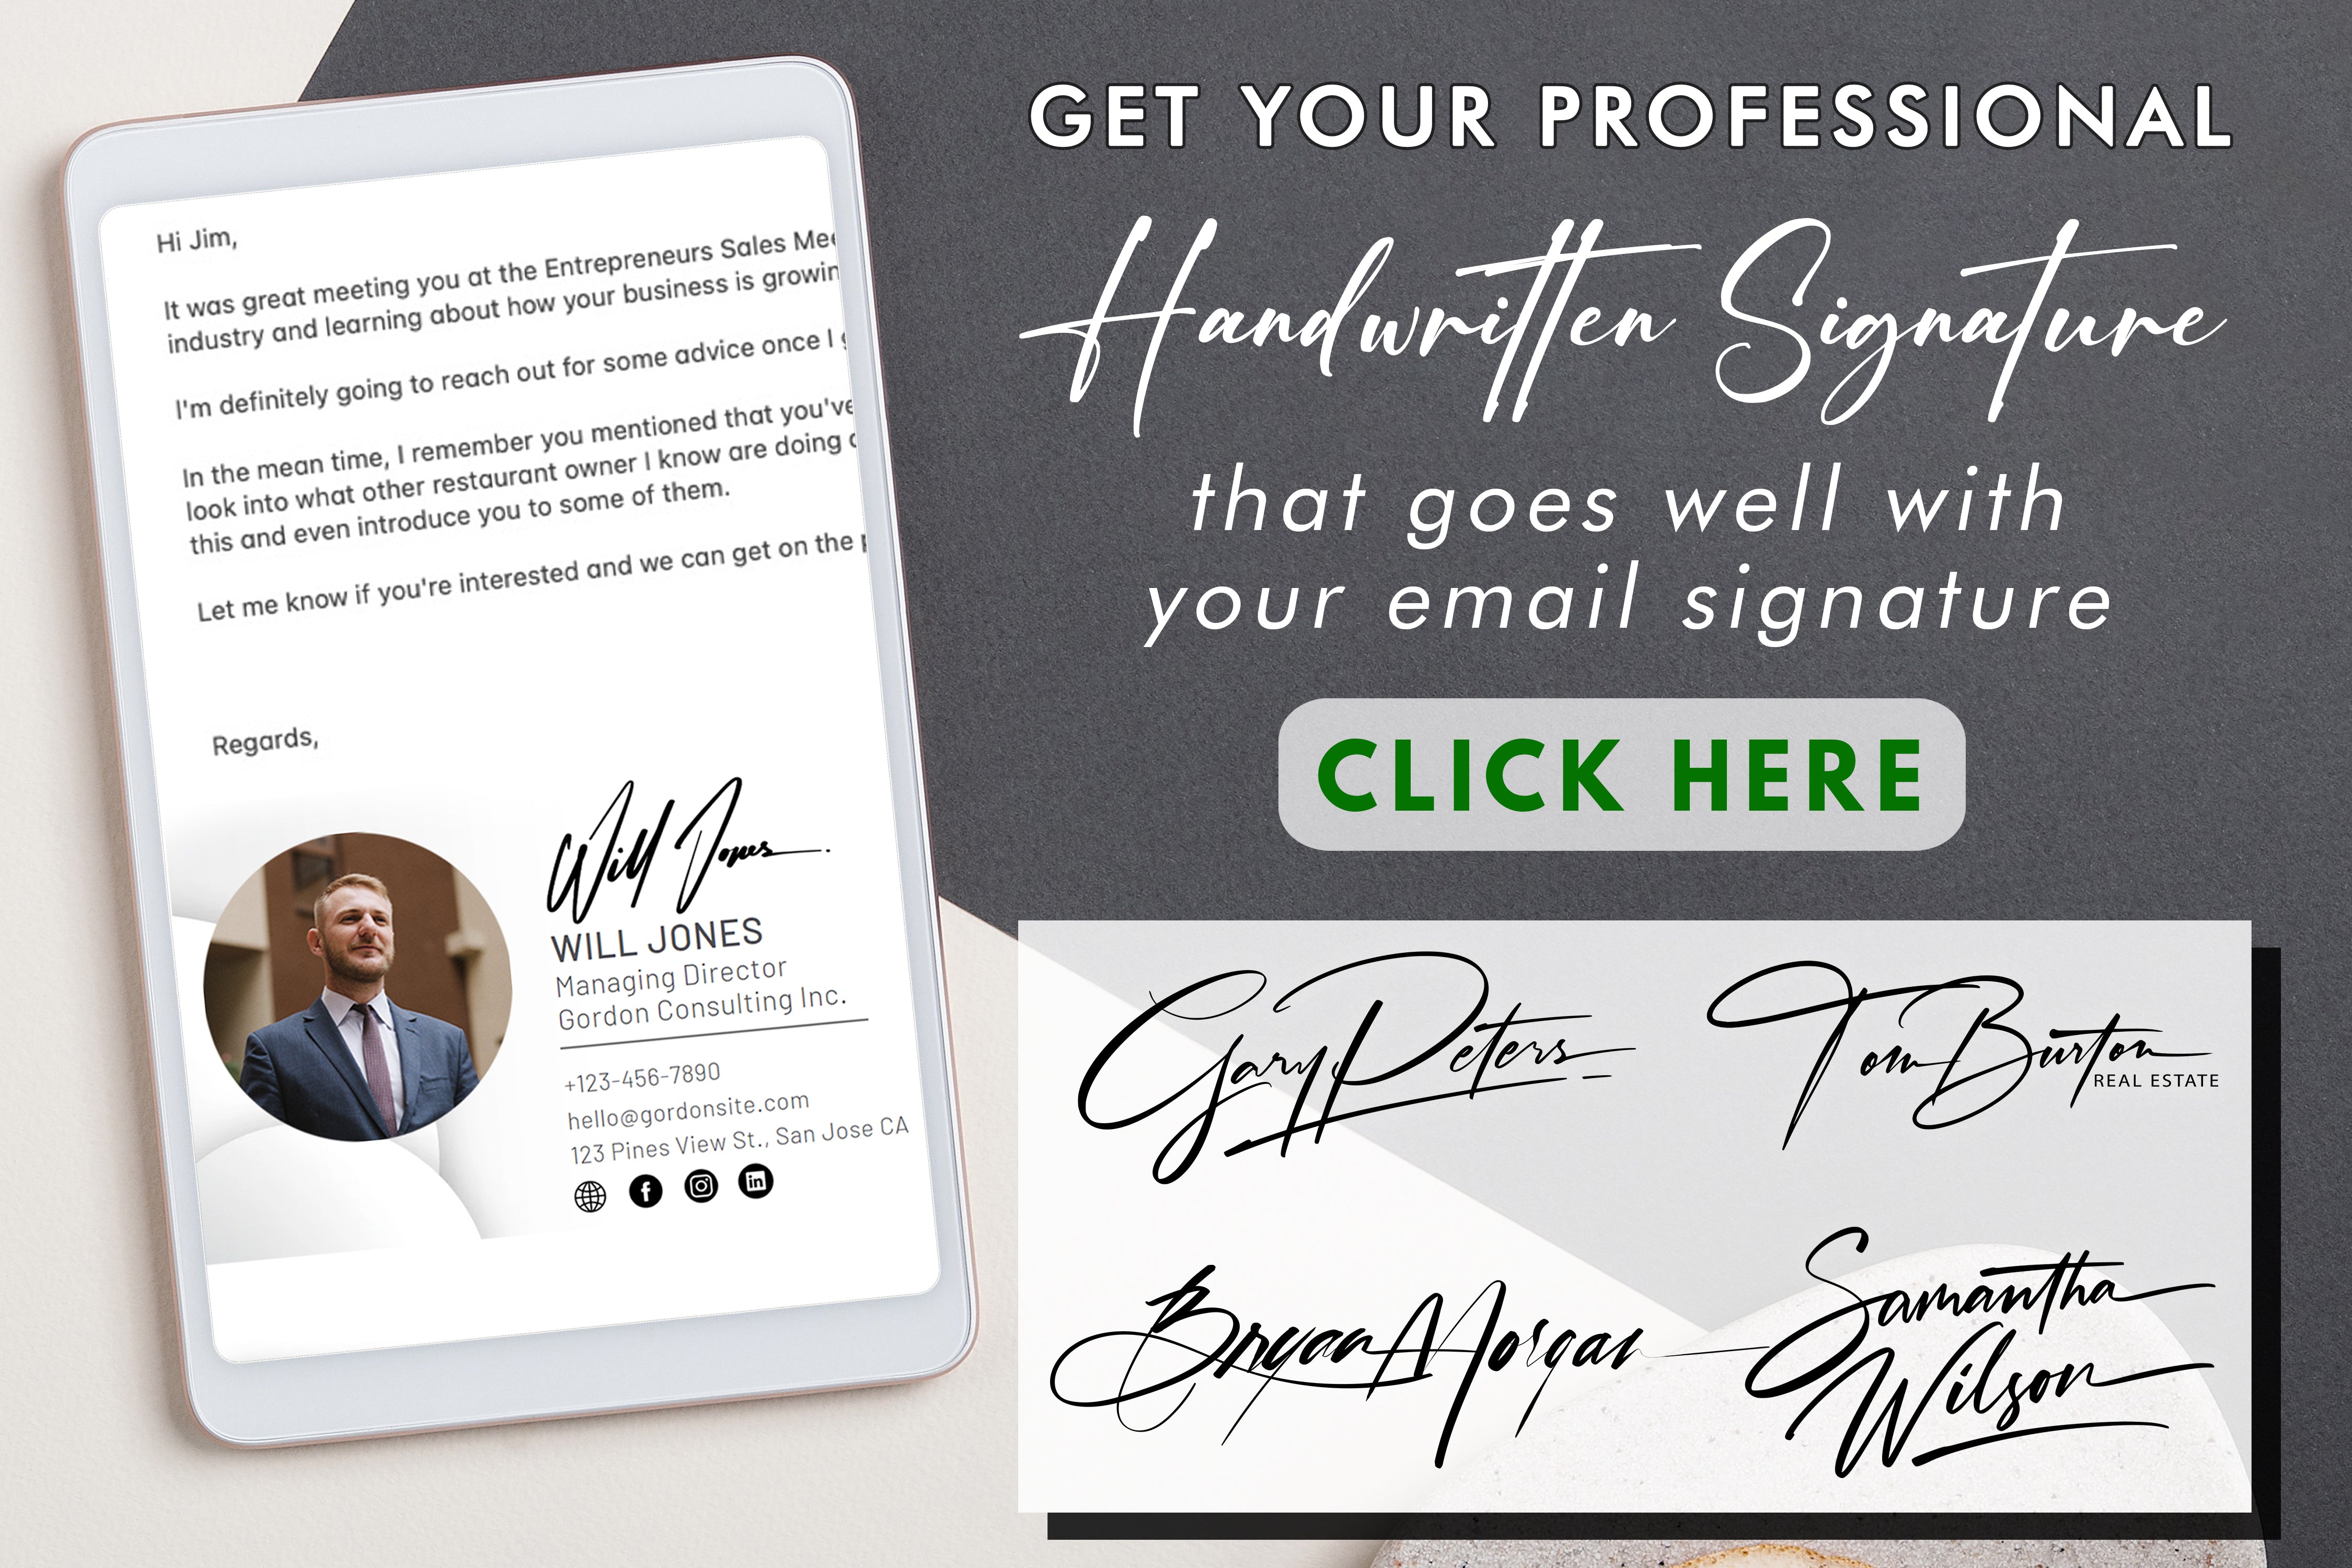 Aprende a sacar el máximo partido a tu bloque de firma y a mejorar tu experiencia de firma de documentos con eficacia y un toque personal.